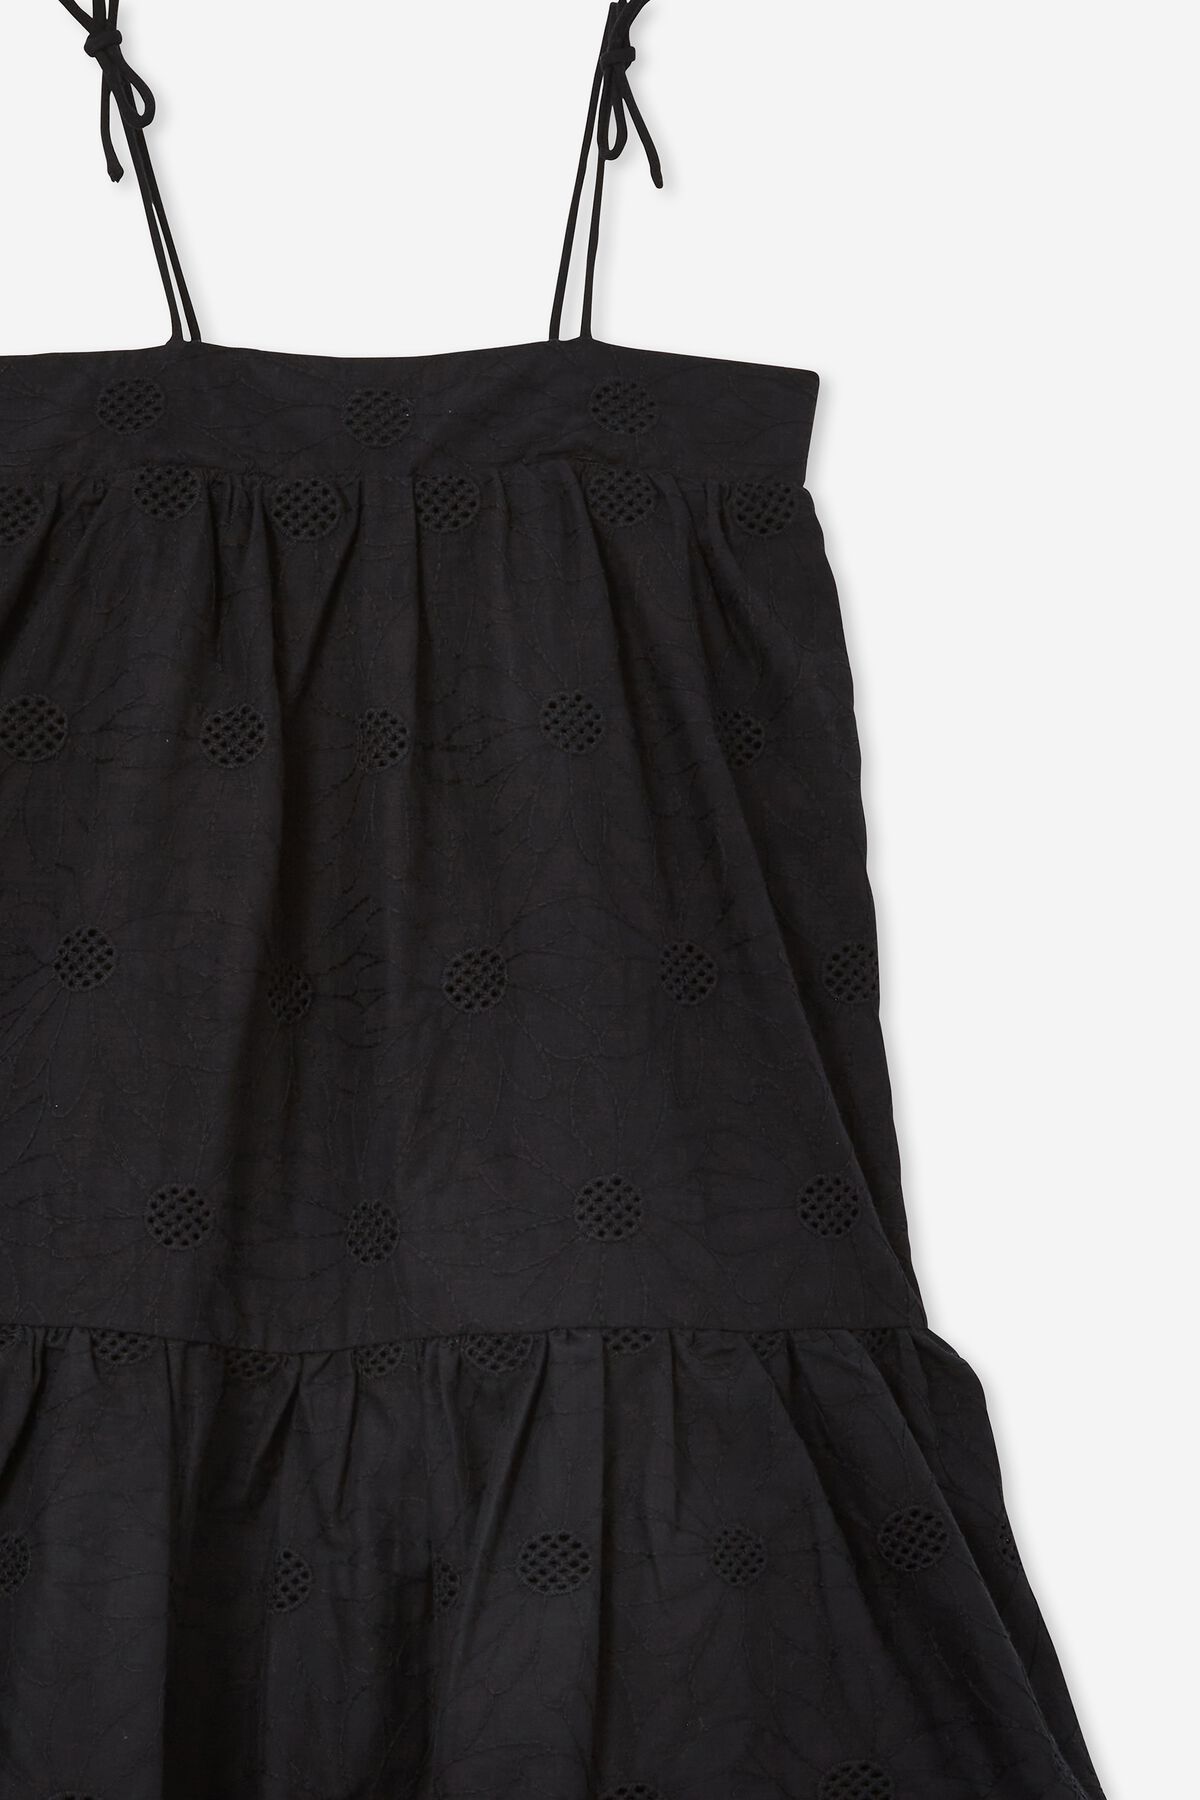 Tallulah Sleeveless Dress | Cotton On (US)